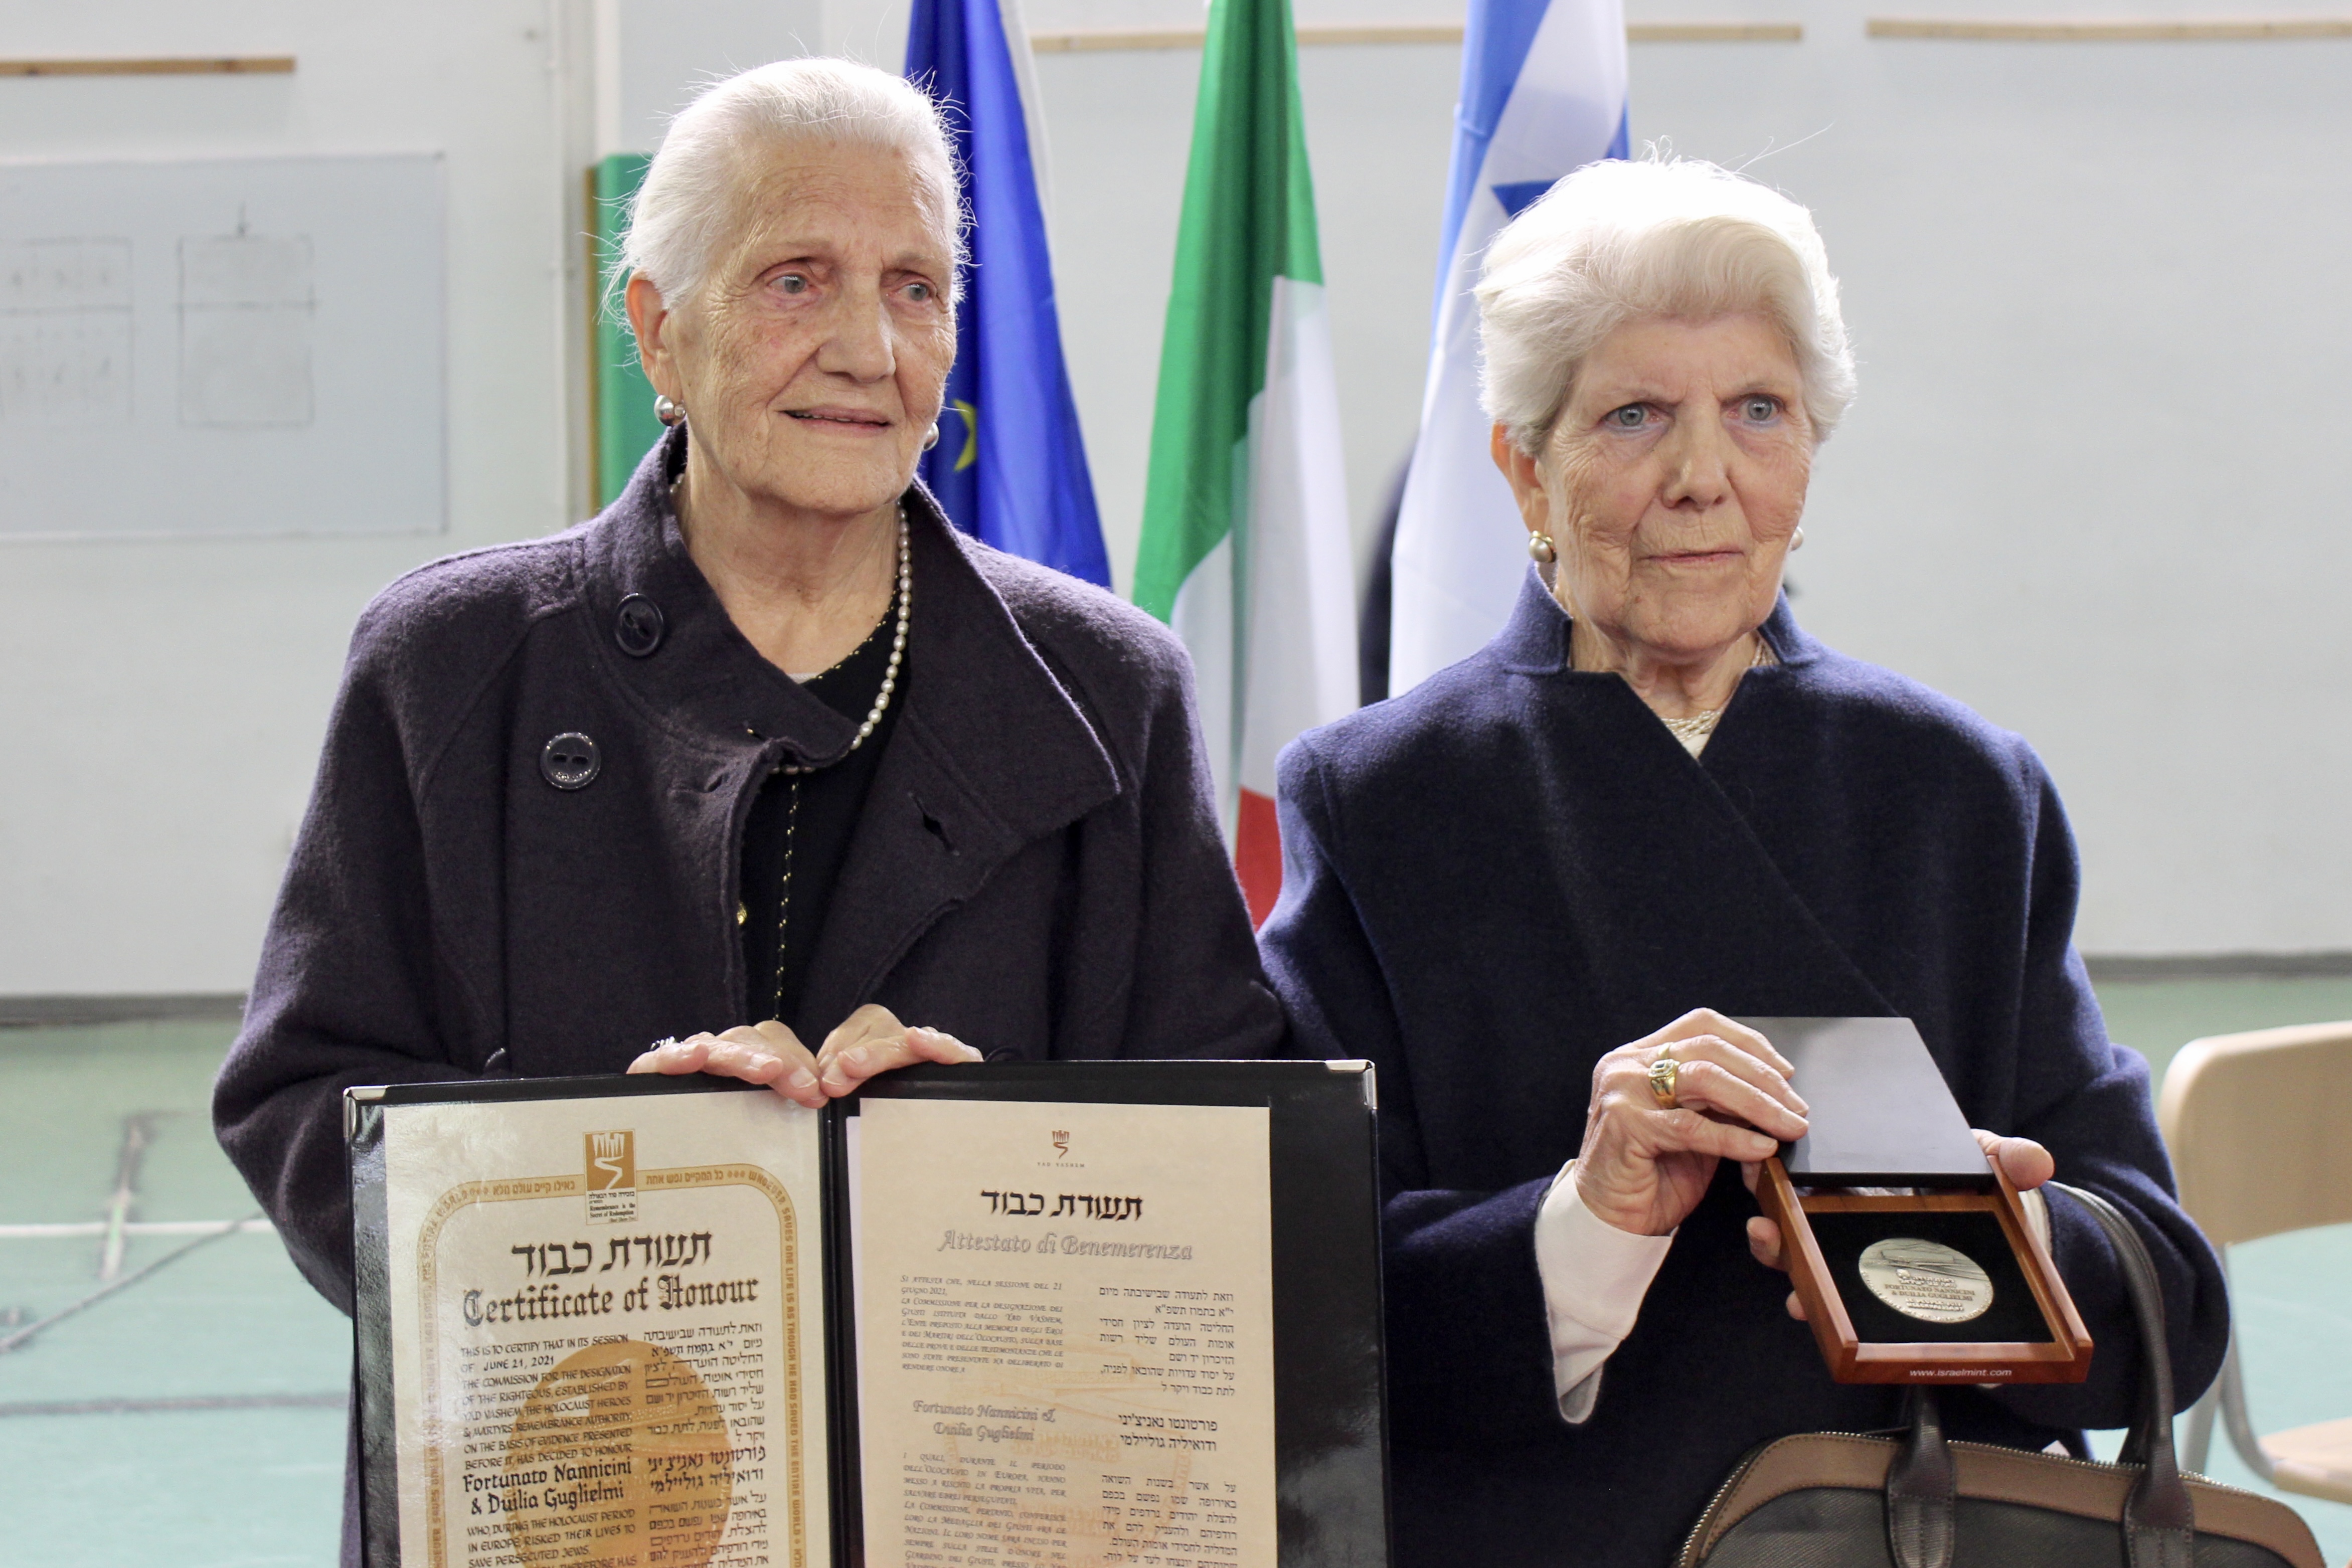 L'ambasciata d'Israele conferisce la più alta onorificenza civile alla memoria di Fortunato Nancini e Duilia Guglielmi (Fonte foto Comune di Signa)